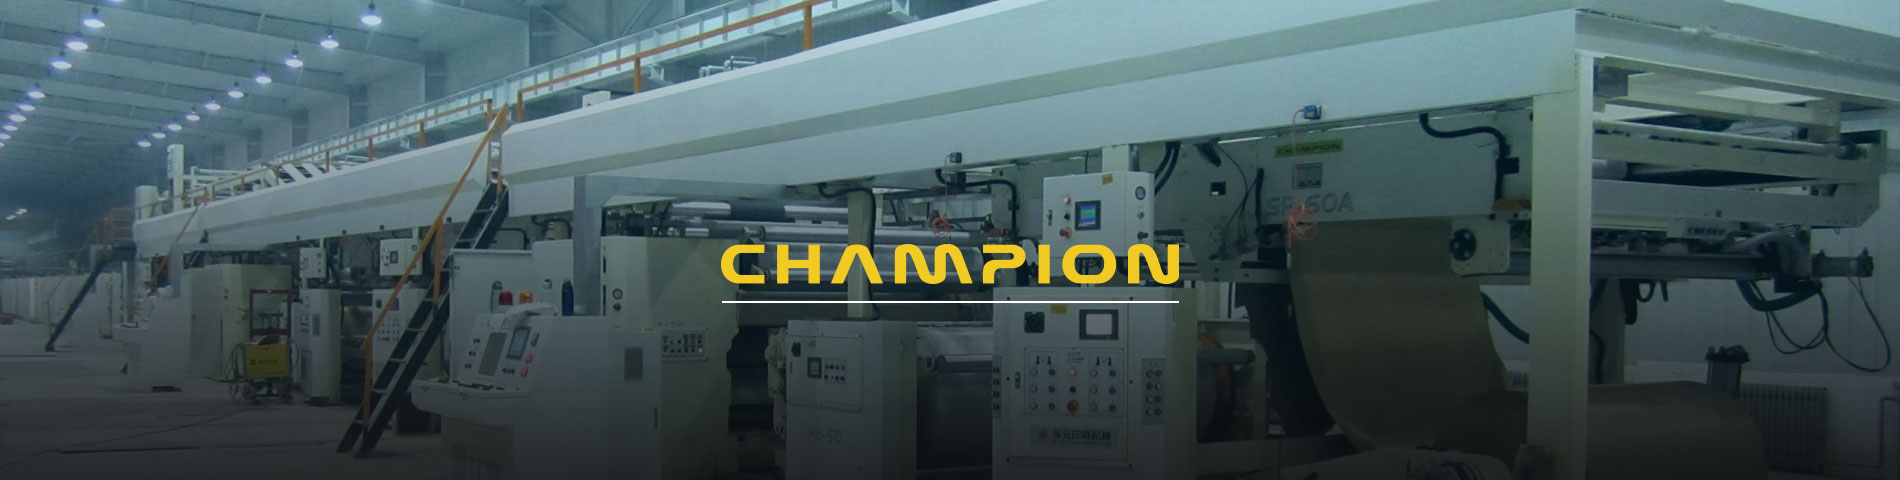 Champion Corrugated là một nhà sản xuất chuyên nghiệp về bìa cứng Thiết bị